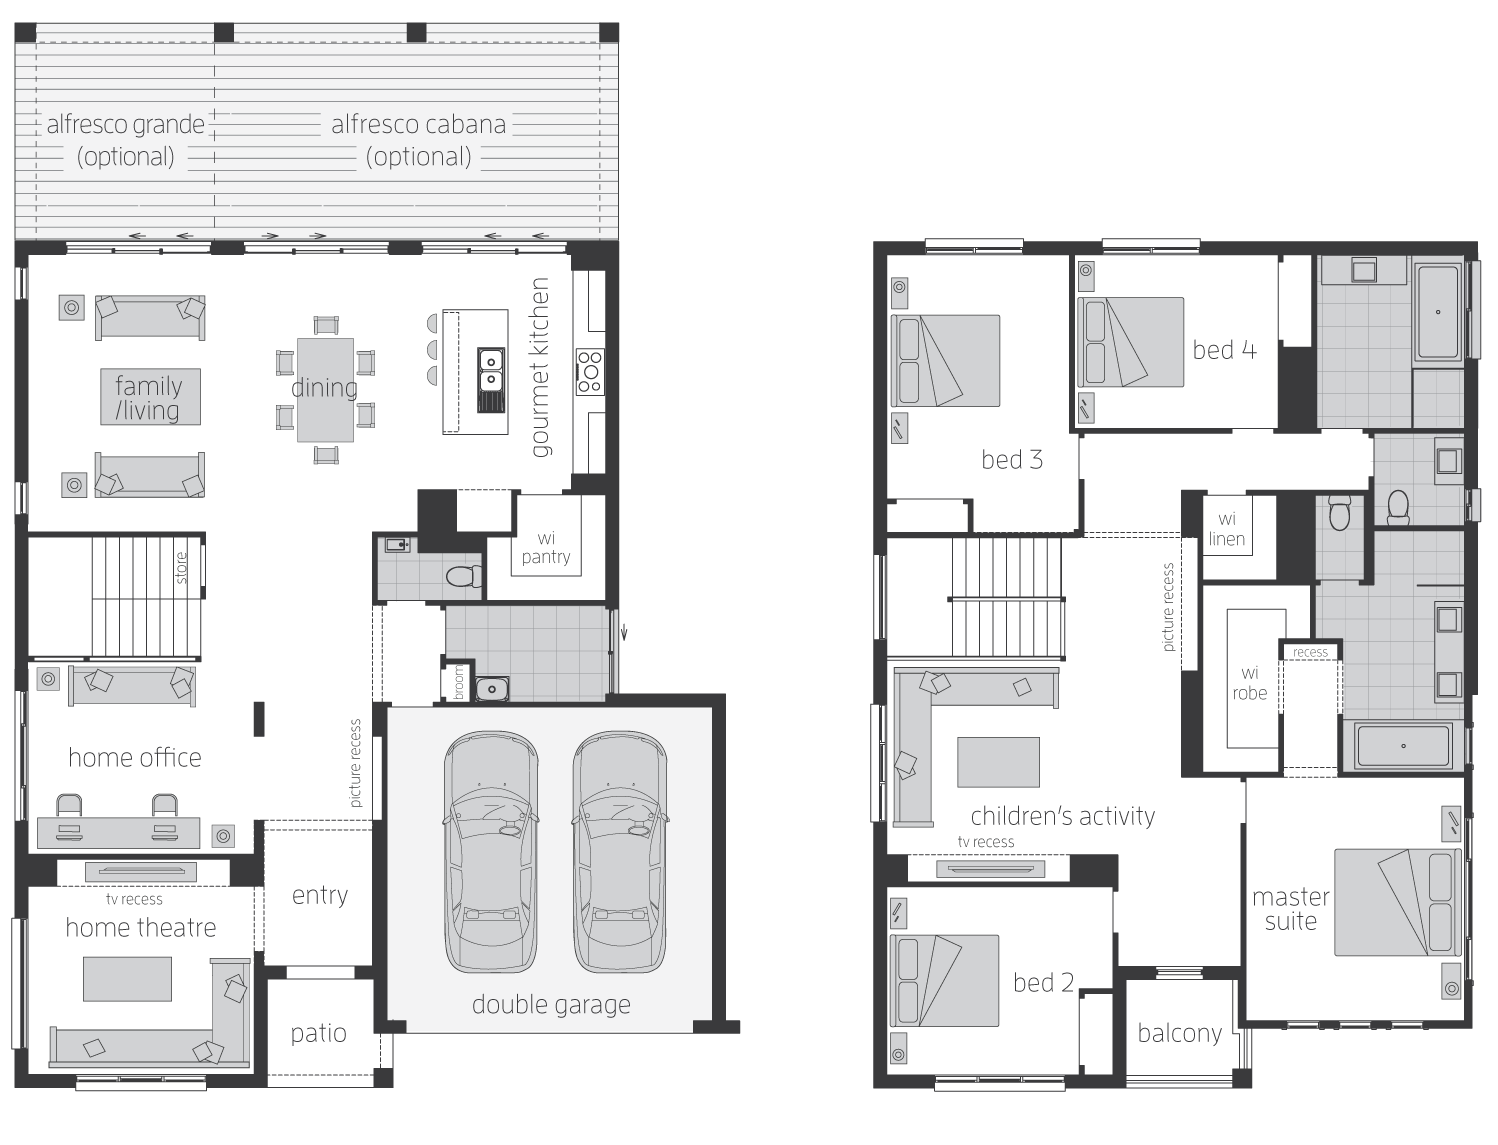 Floor Plan - Huntingdale - Two Storey Home - McDonald Jones